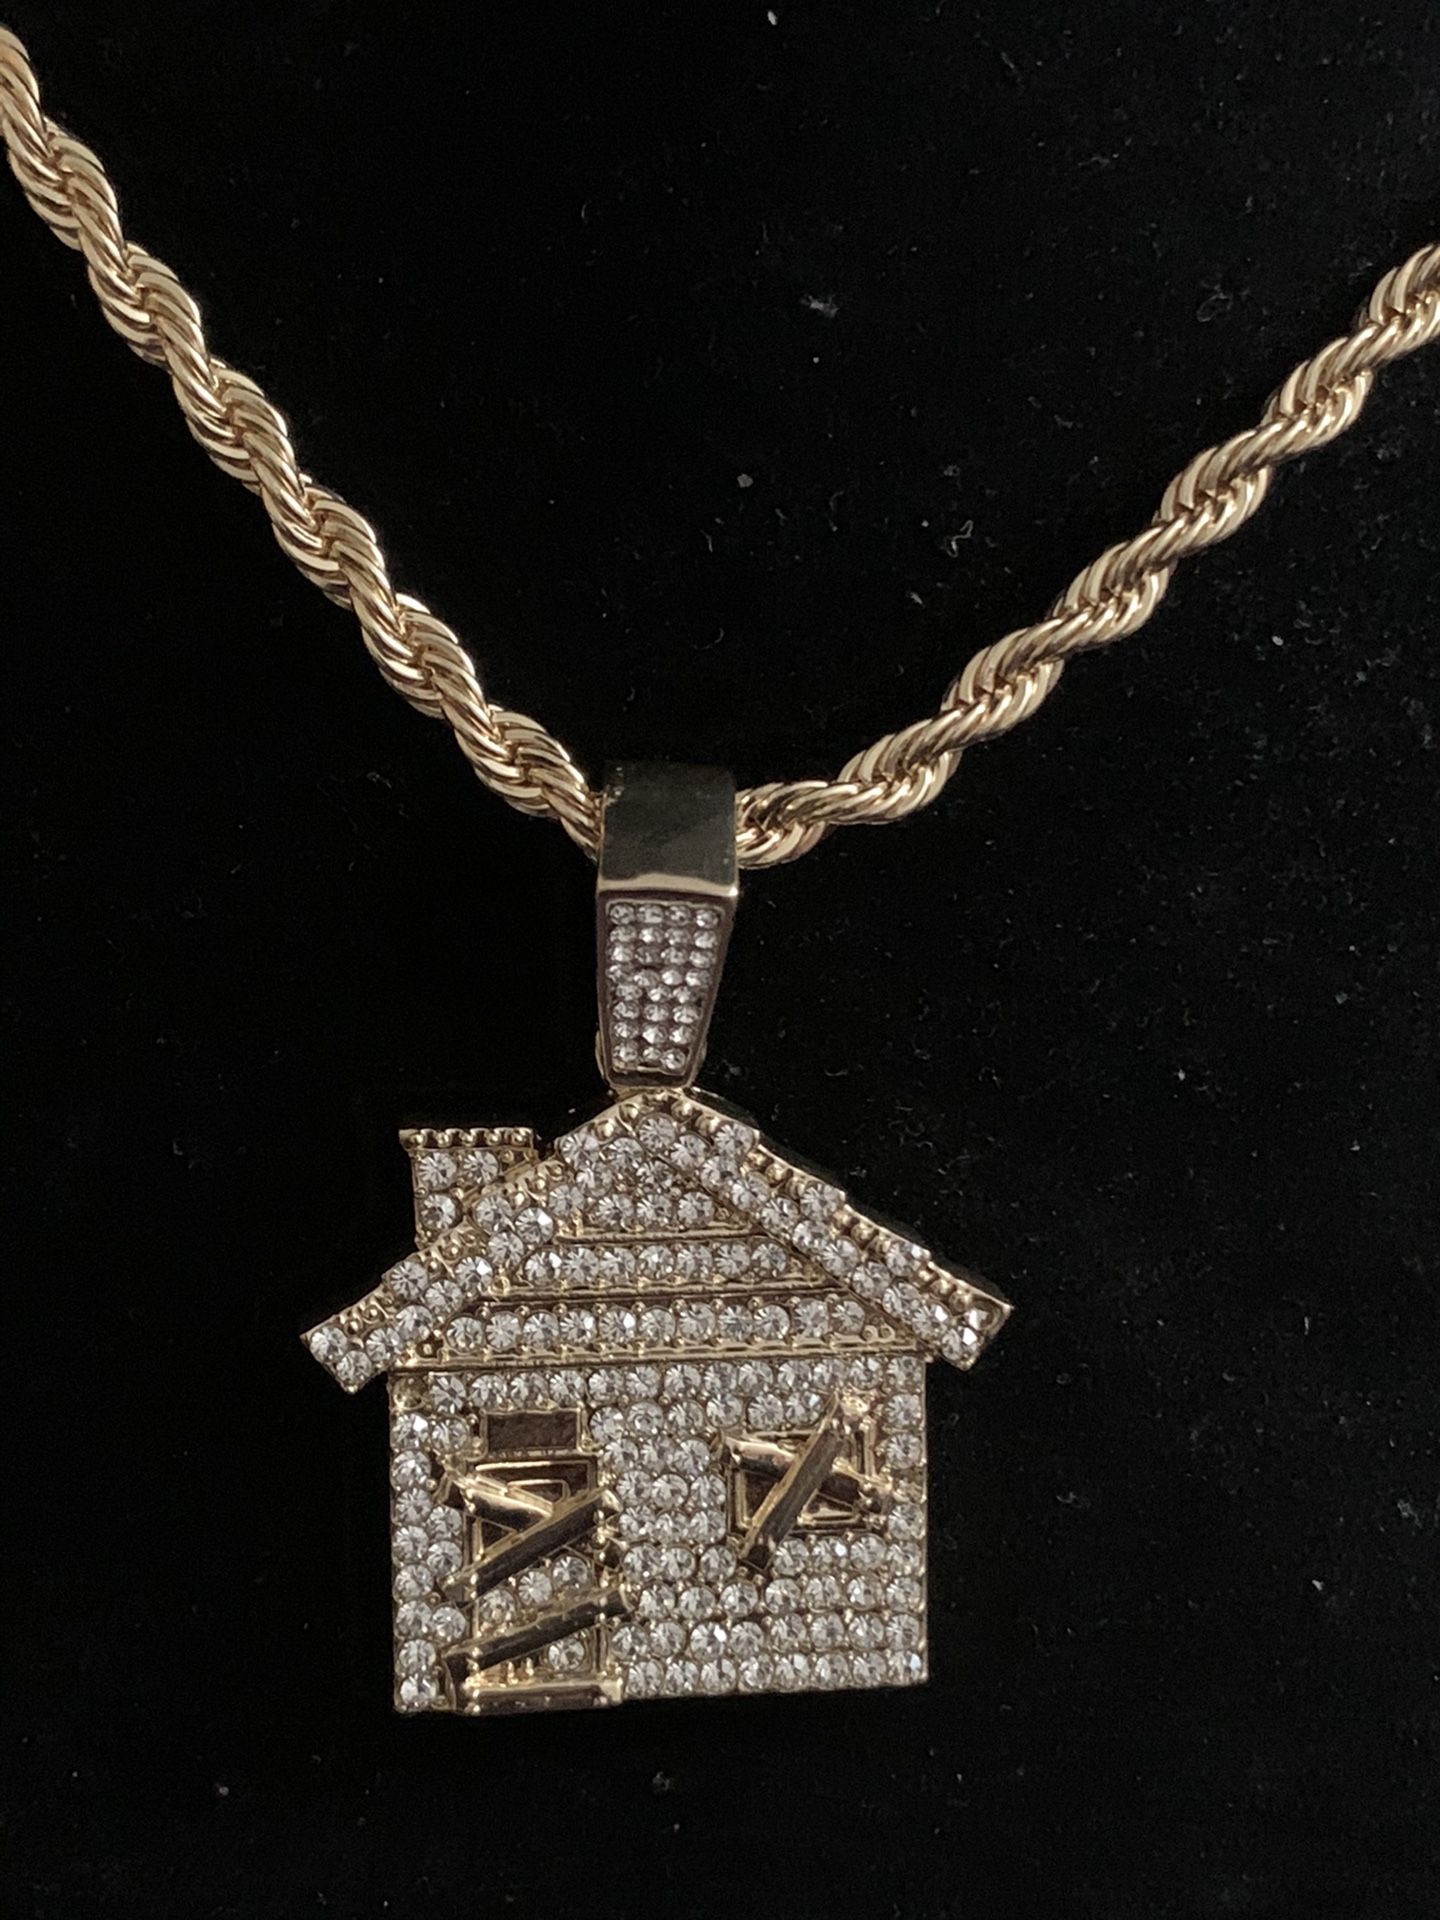 Trap House Pendant Necklace Charm 18kt Gold Plated (Please Read Description)